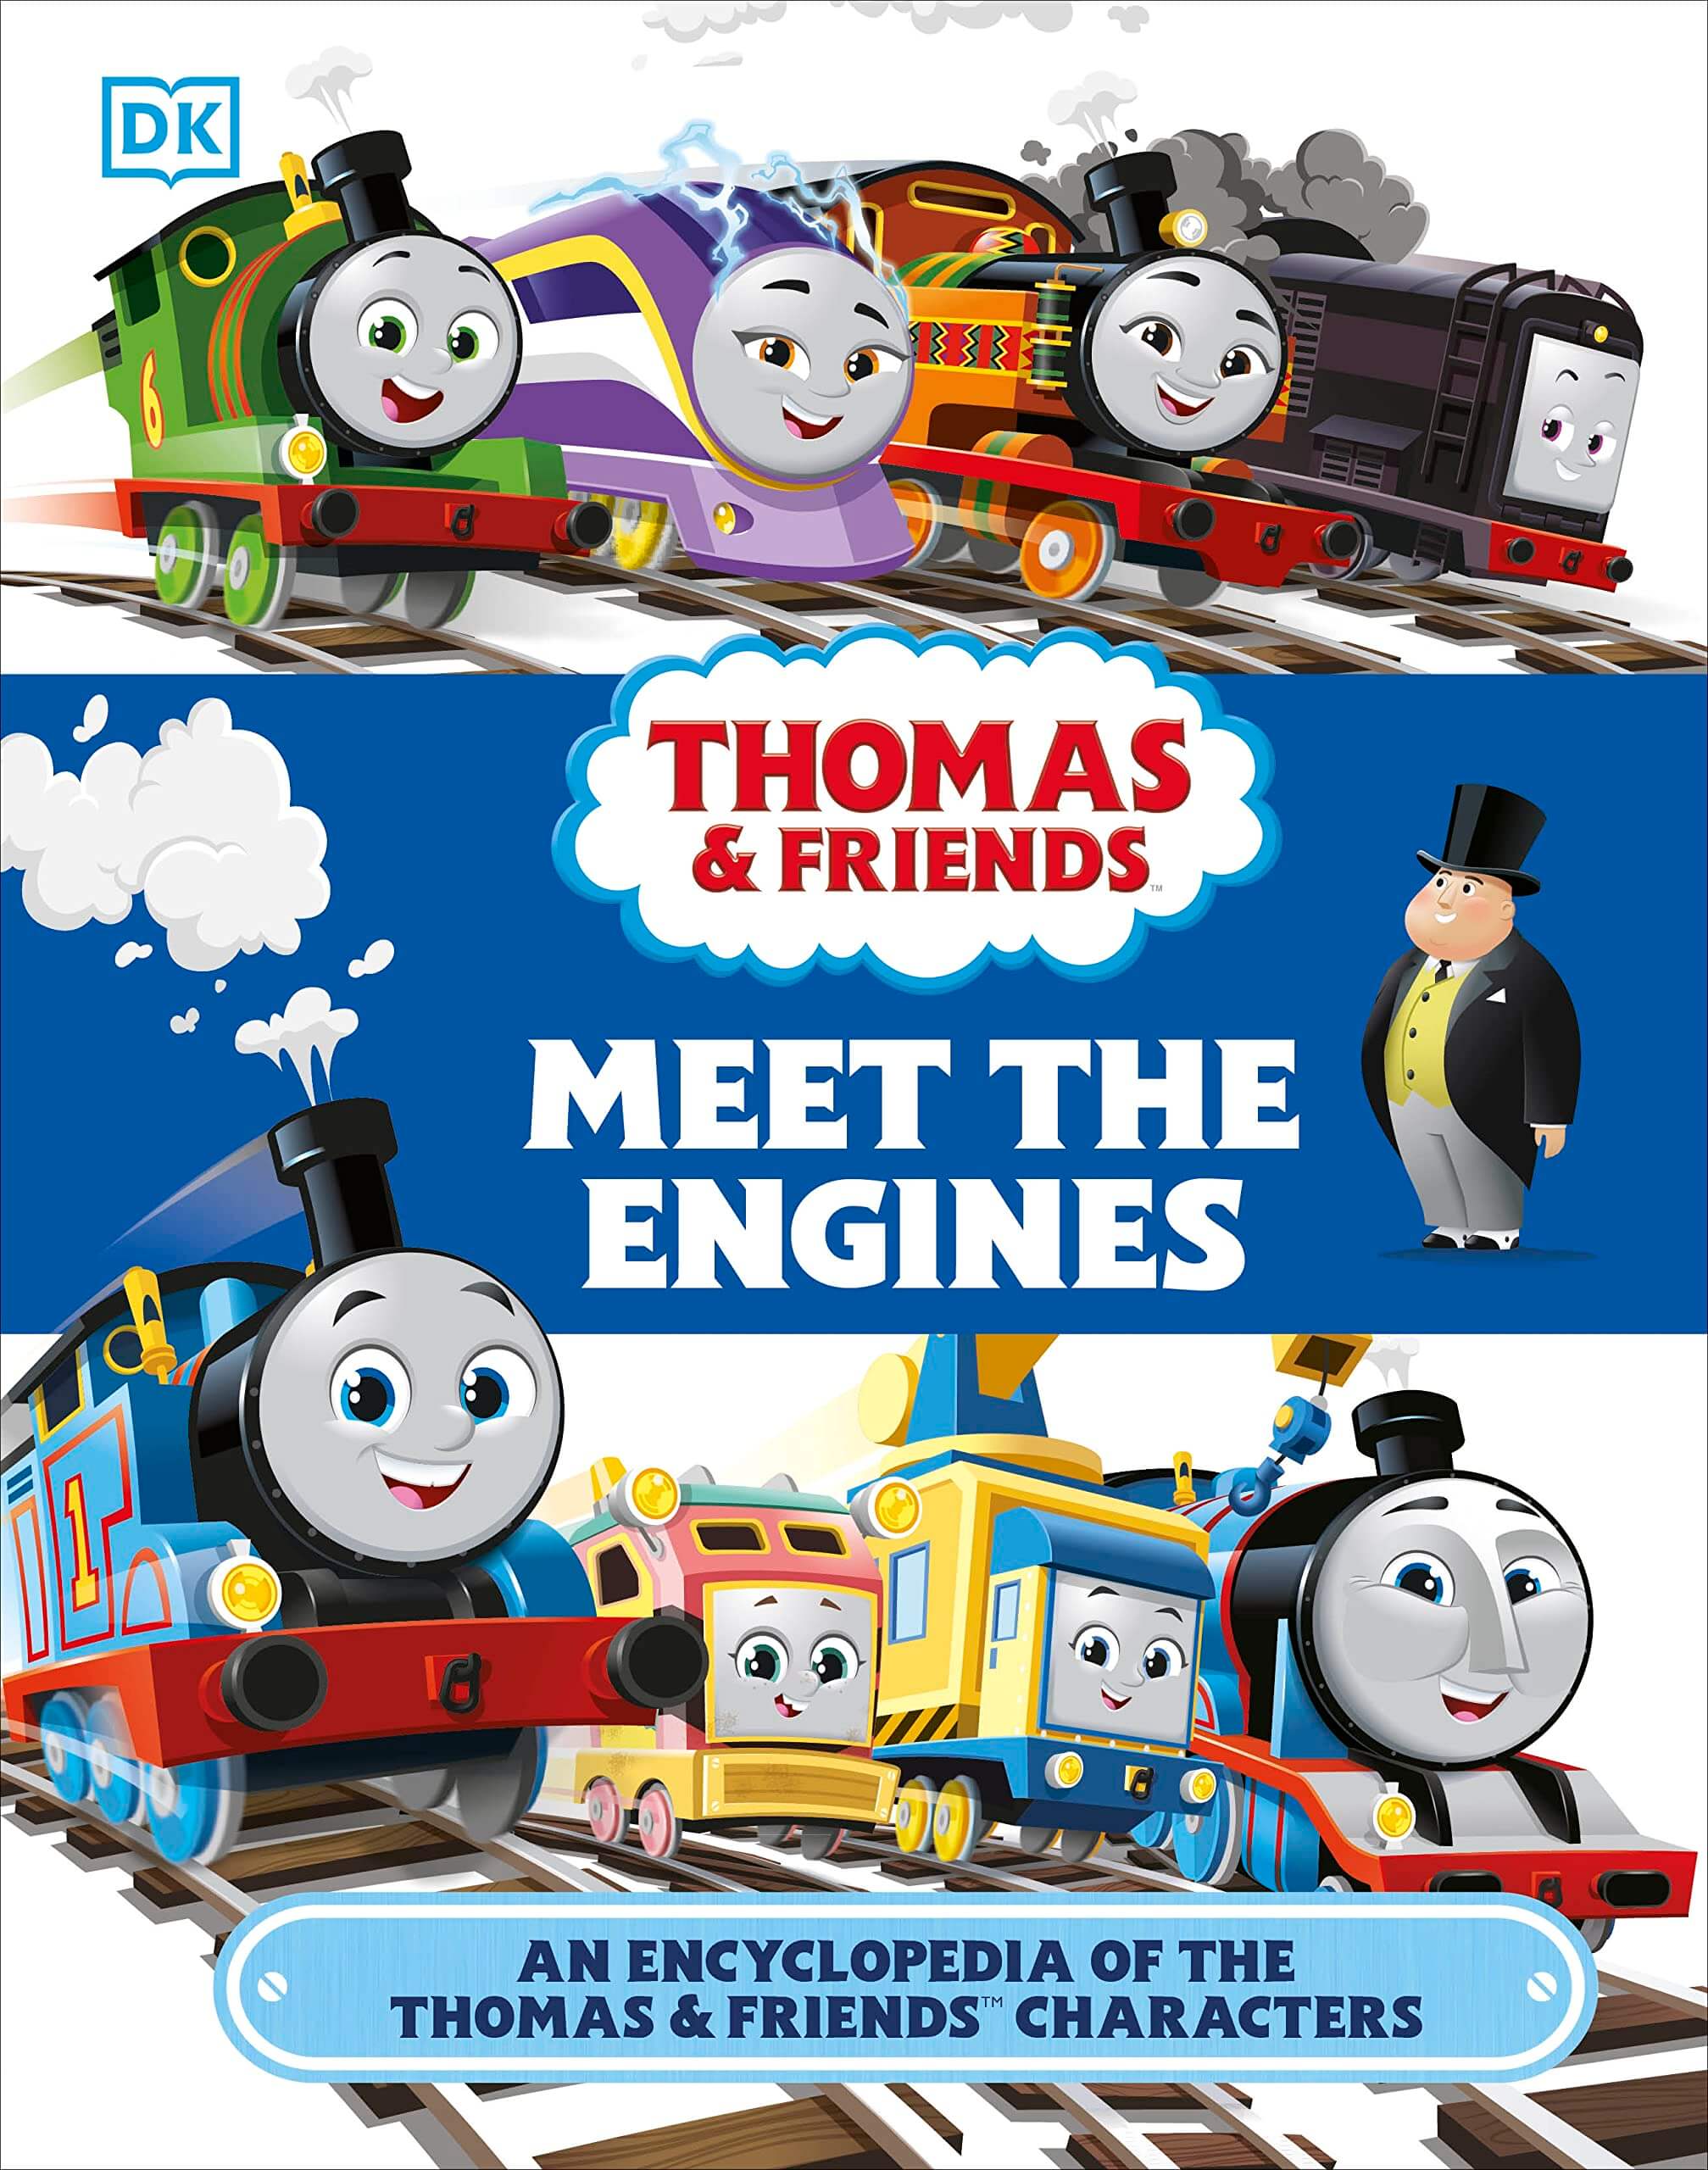 Book: Thomas & Friends